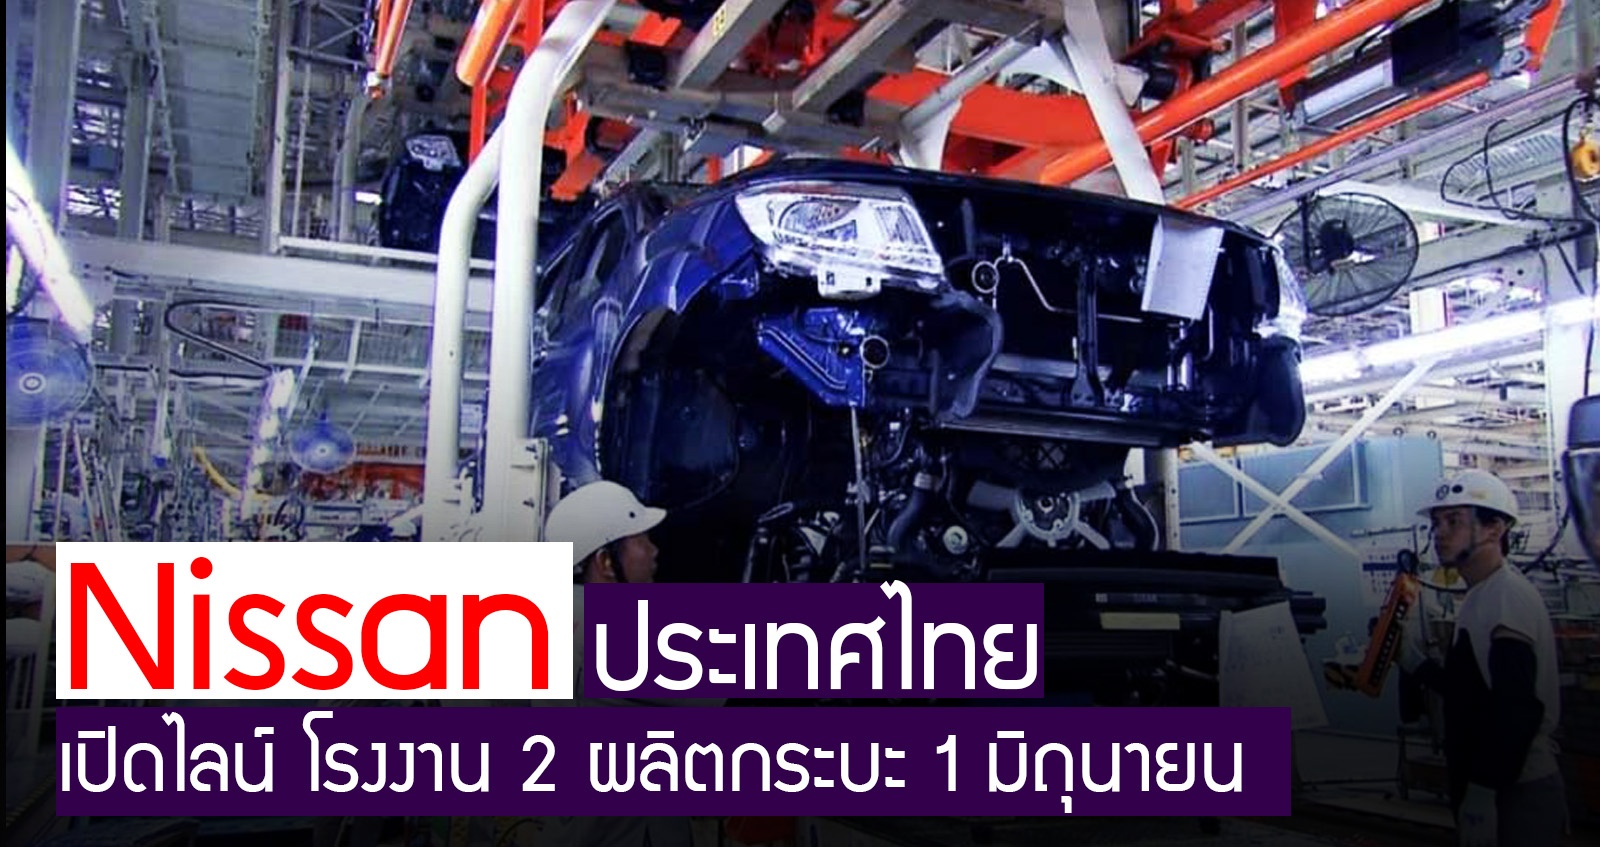 Nissan ประเทศไทย เปิดไลน์ โรงงาน 2 ผลิตกระบะ 1 มิถุนายนนี้